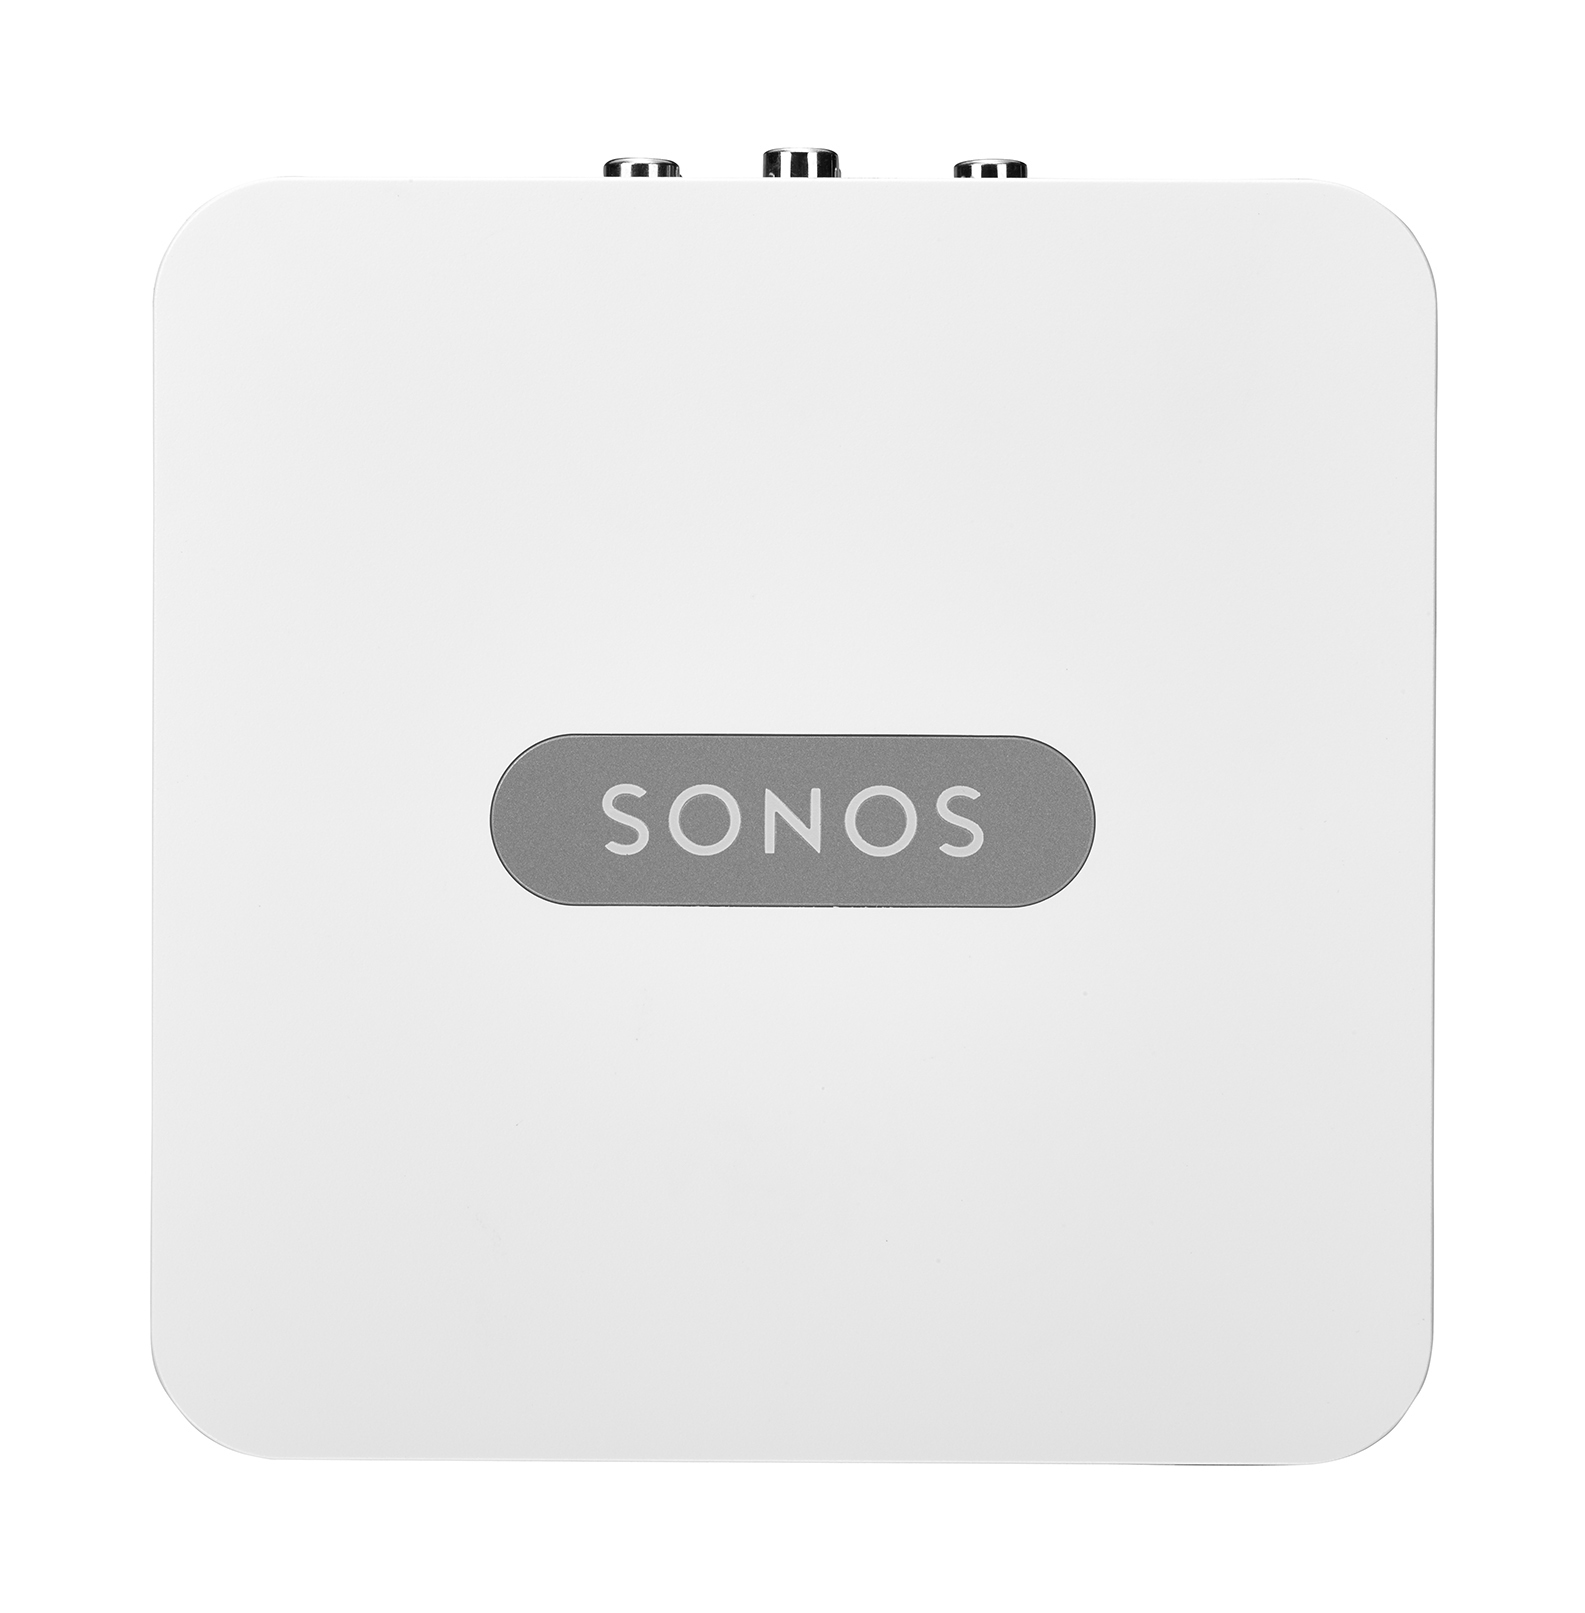 SONOS über Musikstreaming Weiß CONNECT Audio-Equipment herkömmliches App-steuerbar, Lautsprecher WLAN Streaming für